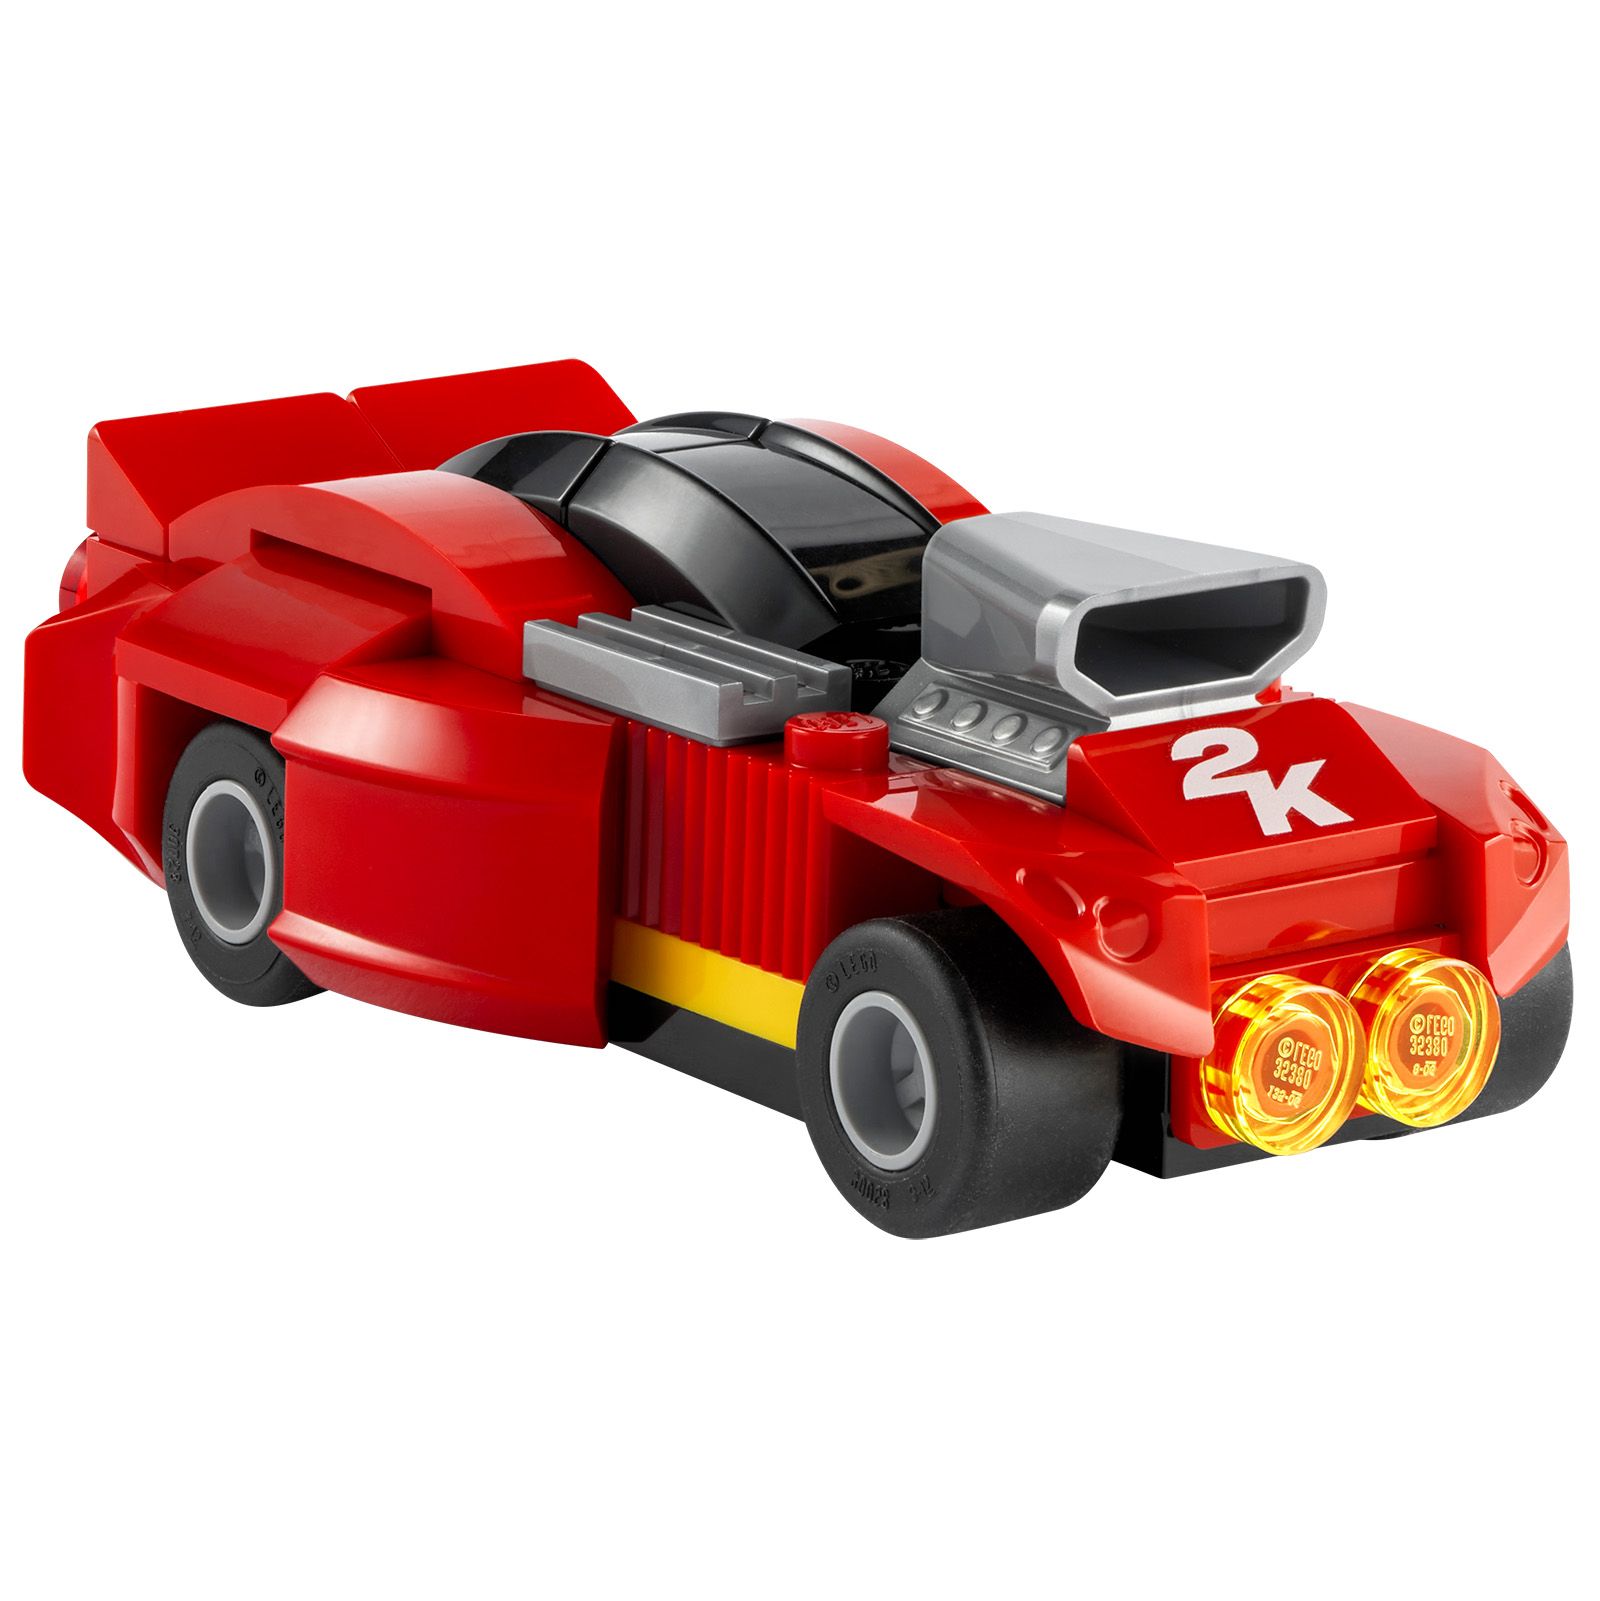 LEGO 2K Drive: zwiastun i produkt LEGO oferowany z niektórymi fizycznymi wersjami gry wideo